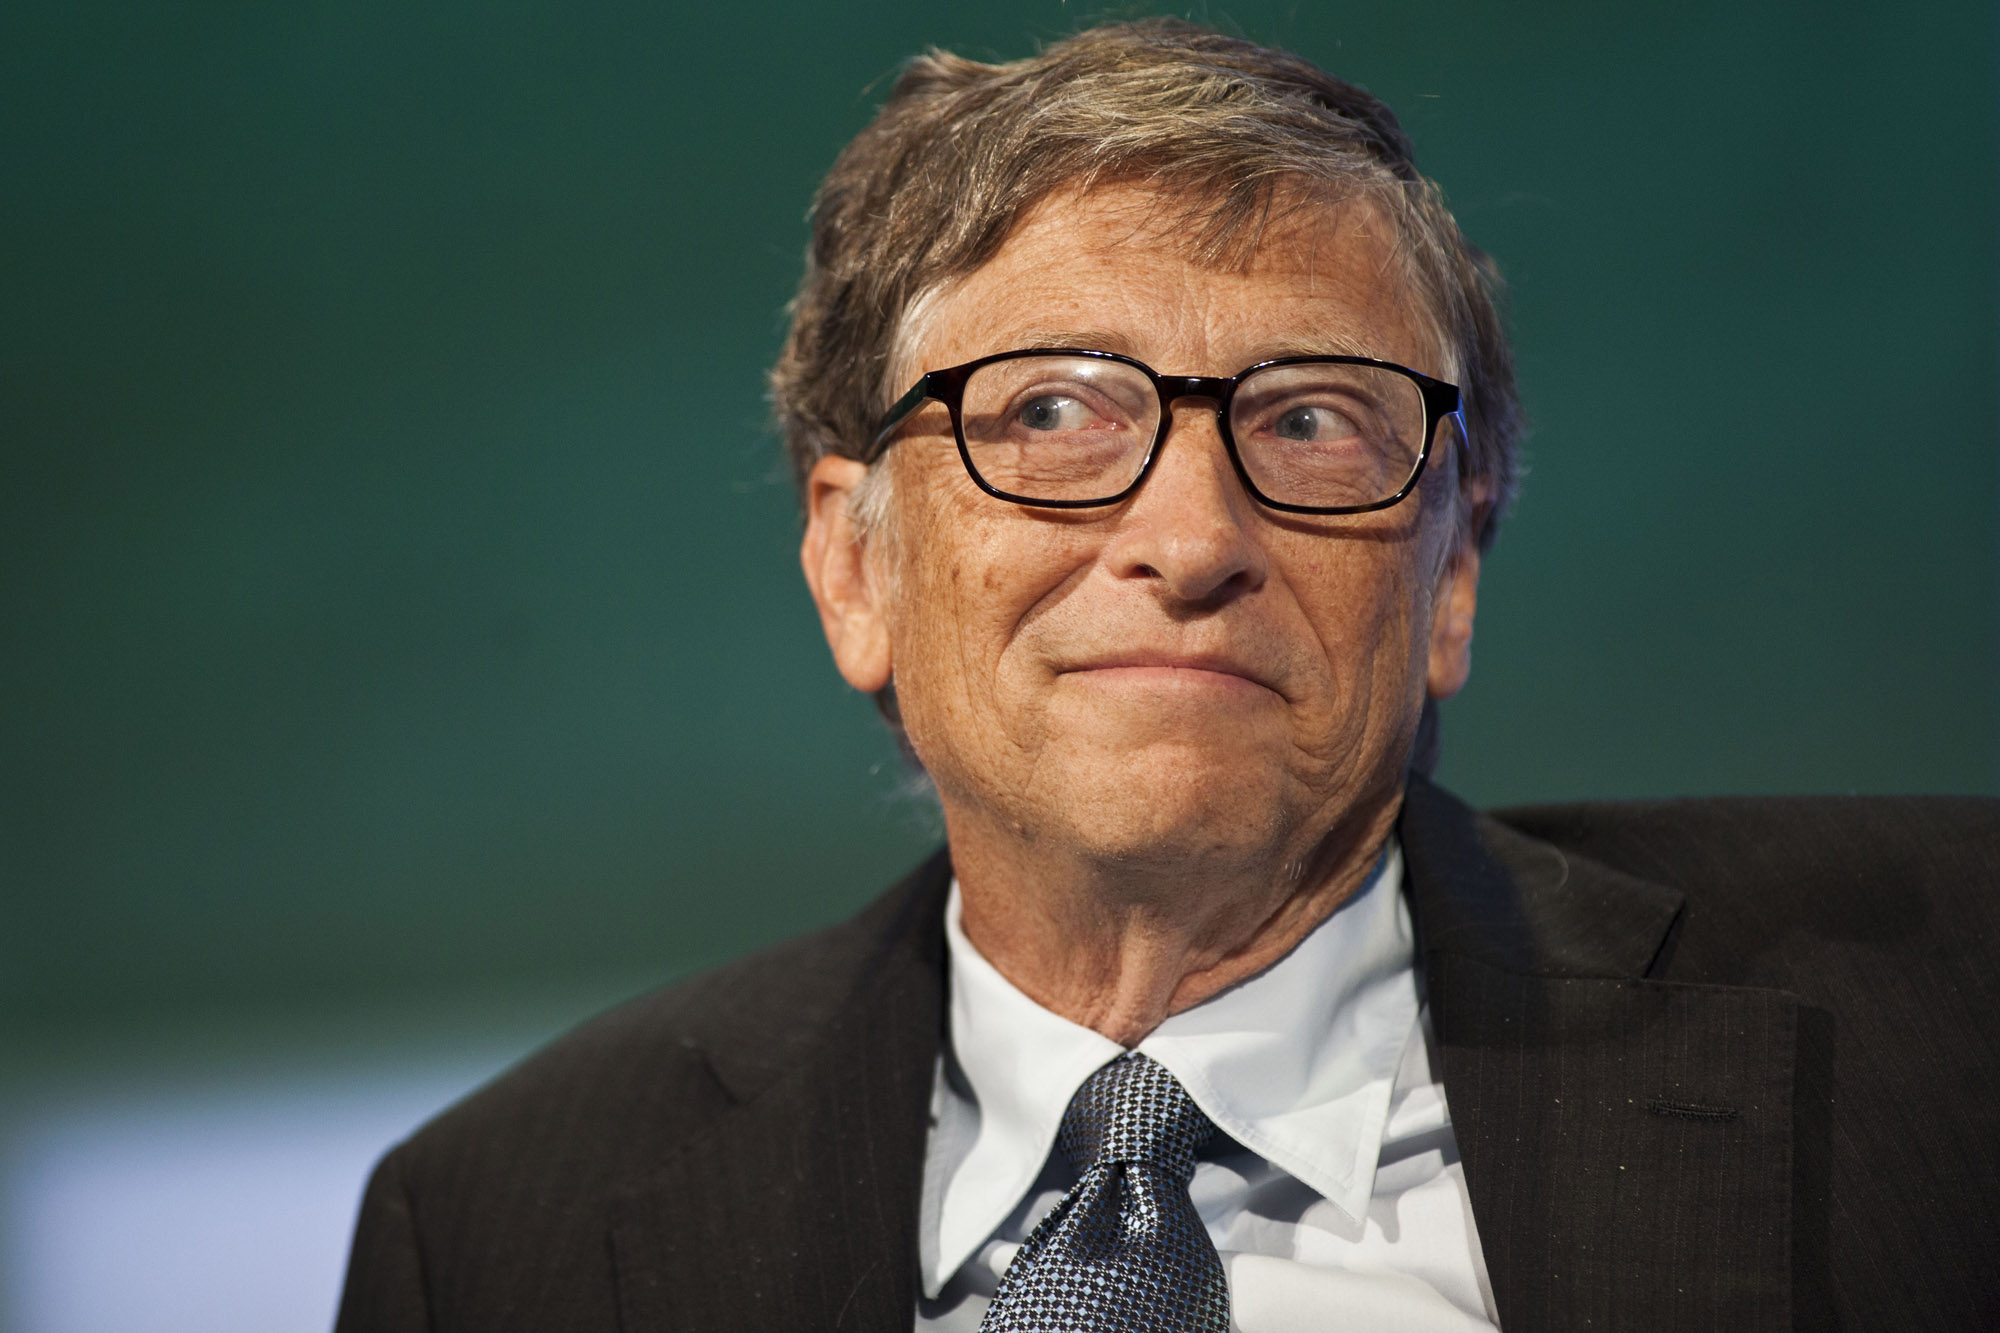 Conoce las predicciones de Bill Gates que se hicieron realidad